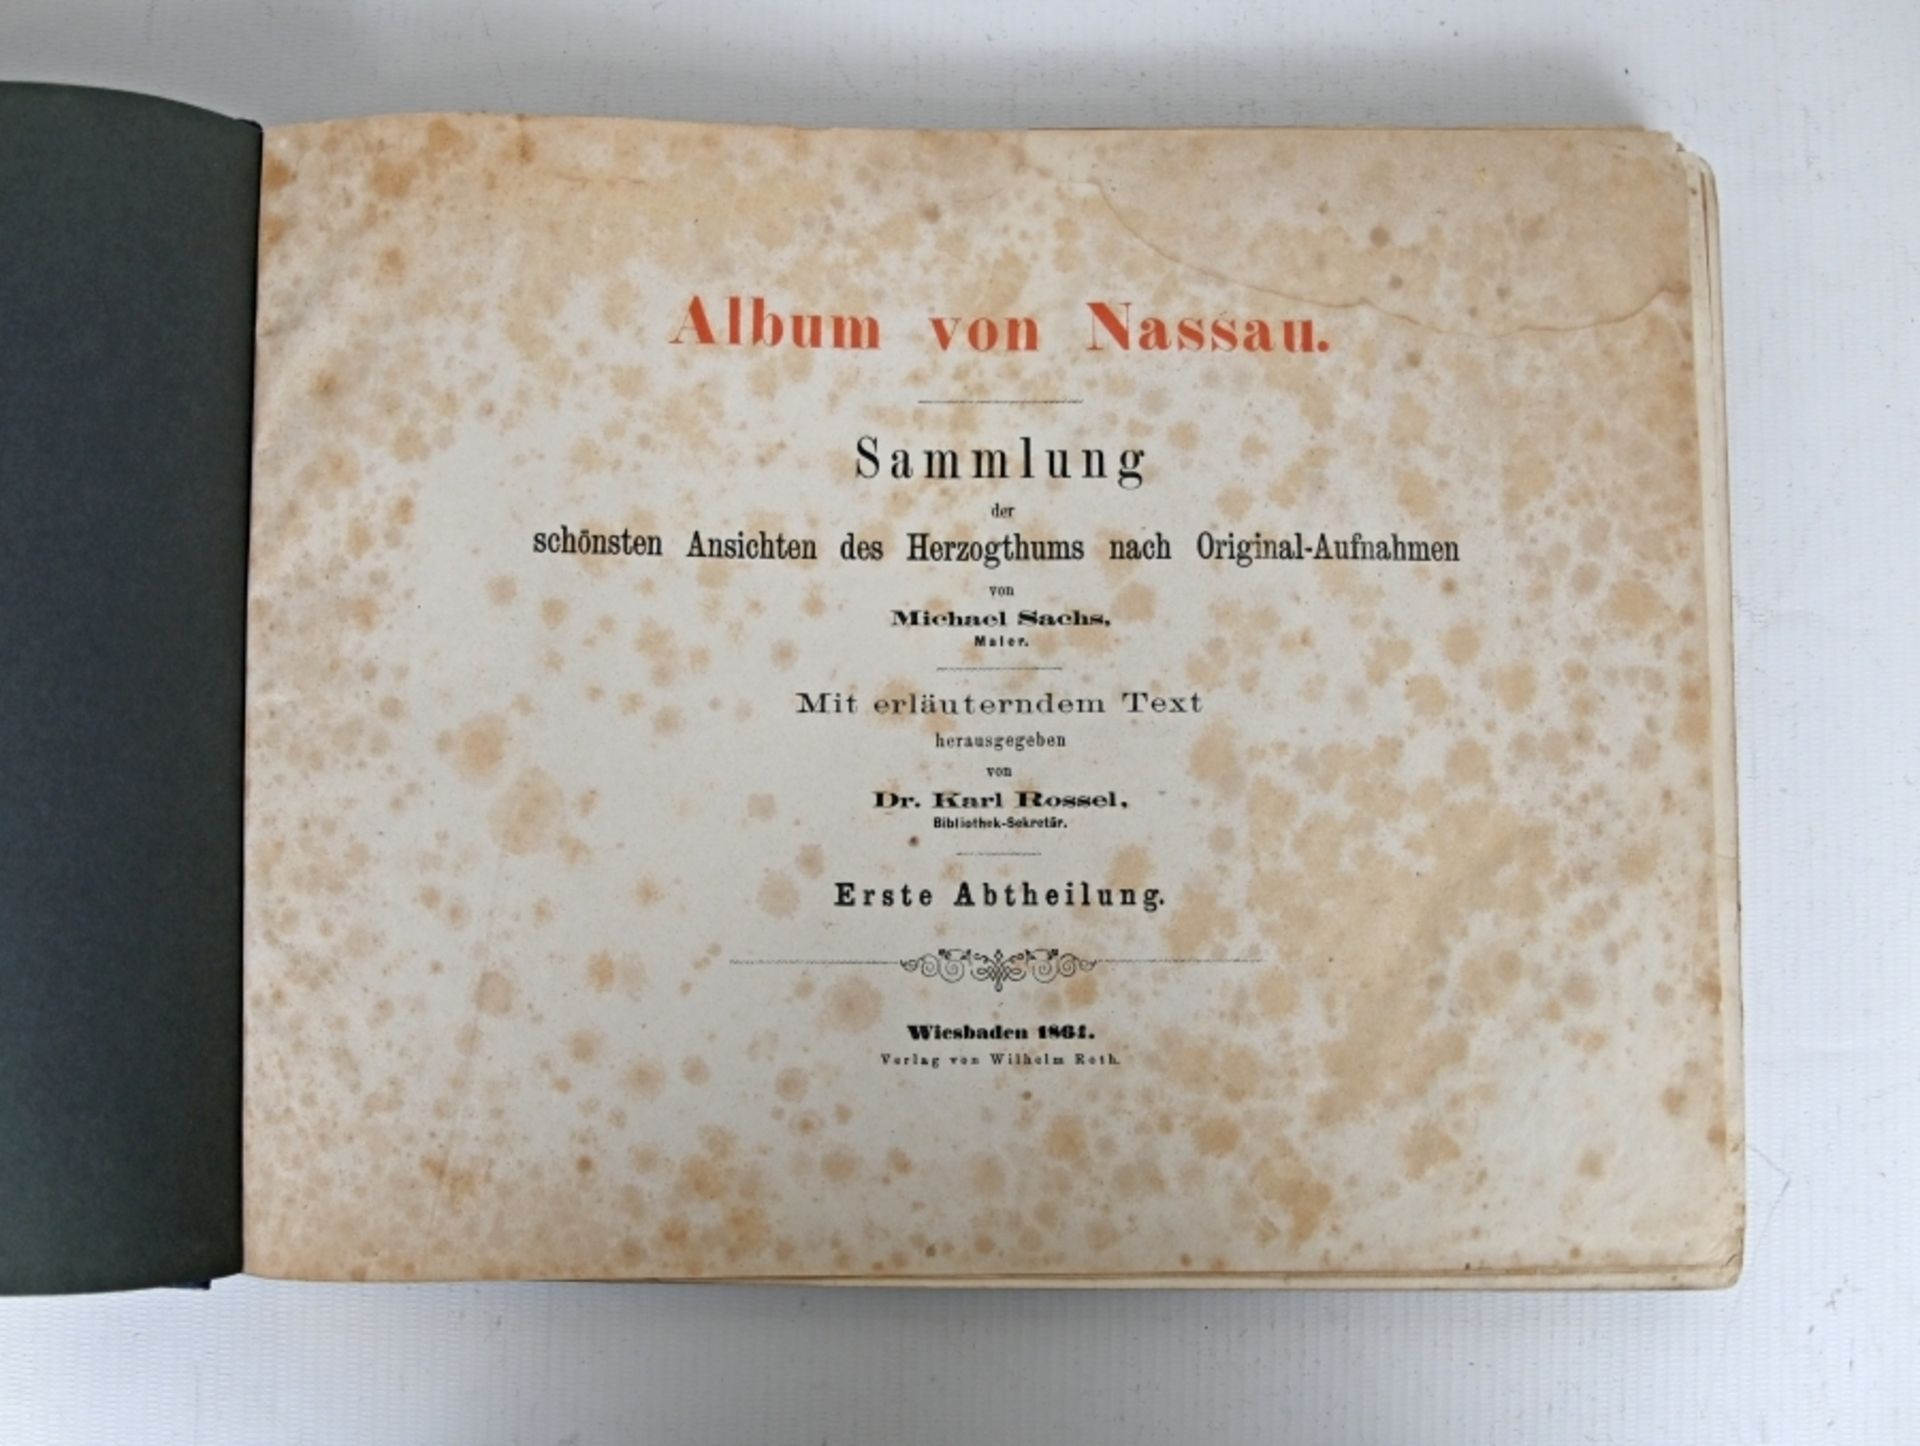 "Album von Nassau", Karl Rossel (Hrsg.) - Image 2 of 3